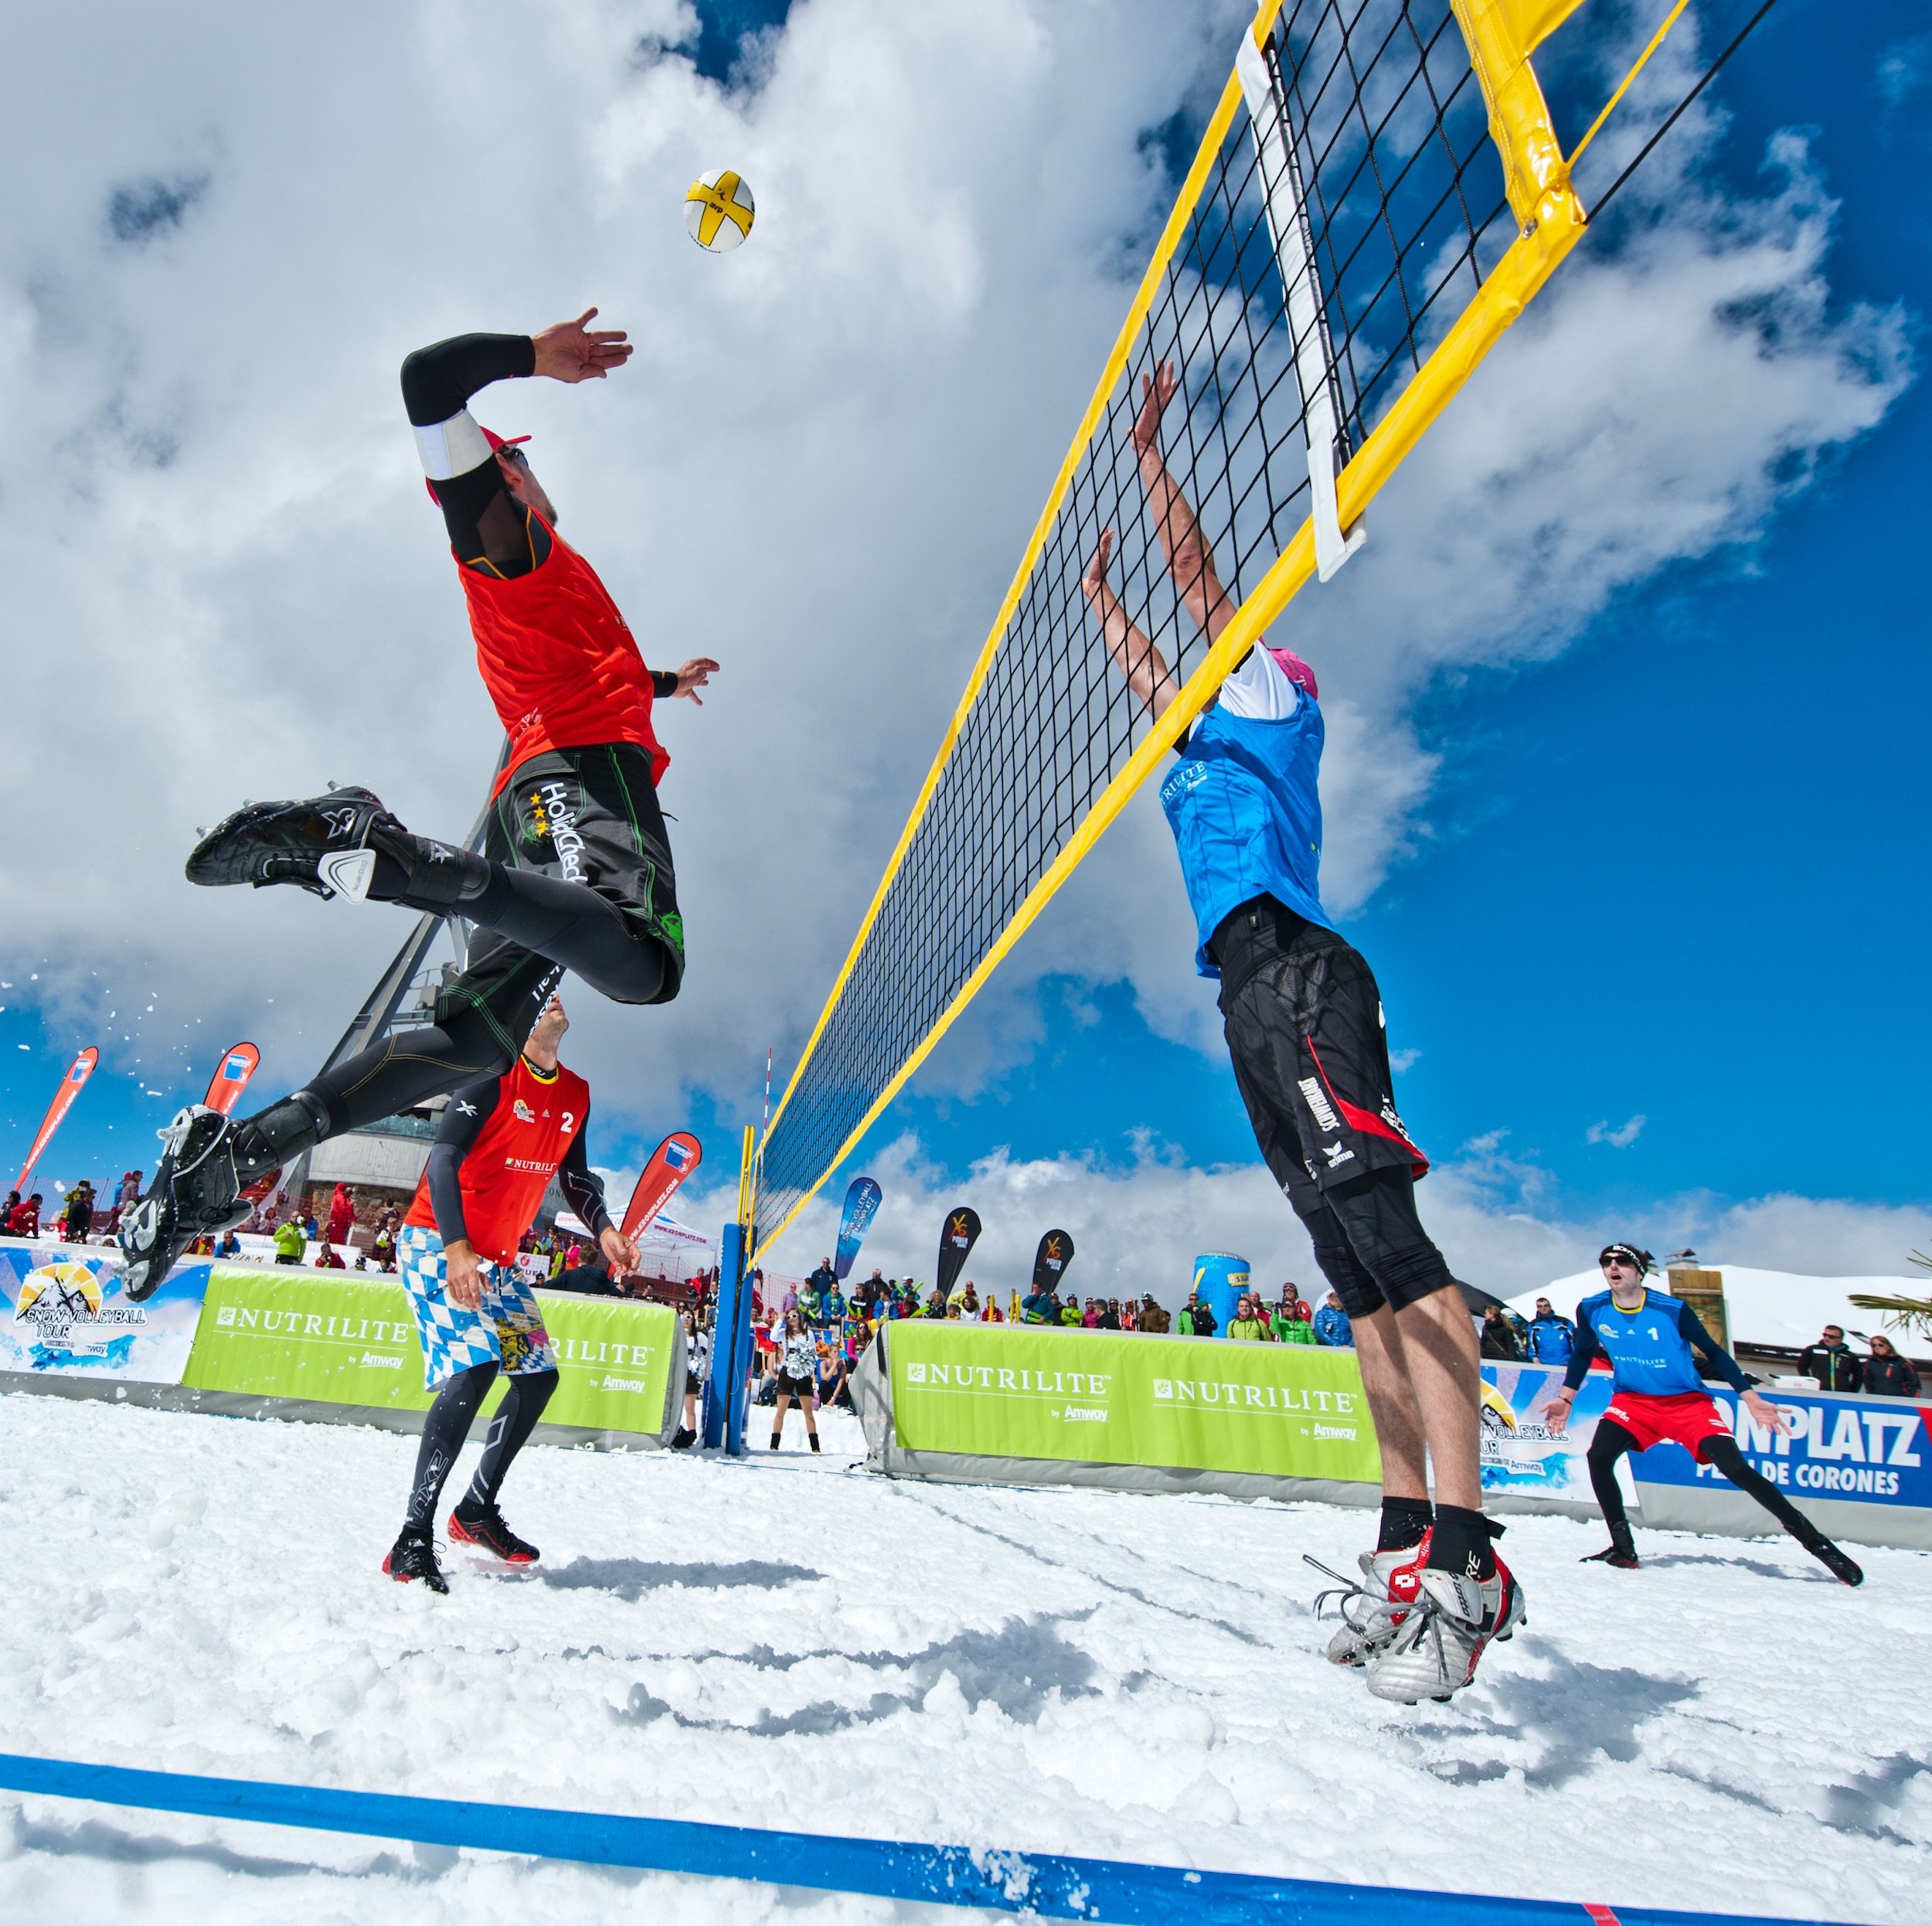 Ziele – St. Anton am Arlberg: „Snow Volleyball Tour“ – großes Finale am 5. und 6. April 2014 am Arlberg